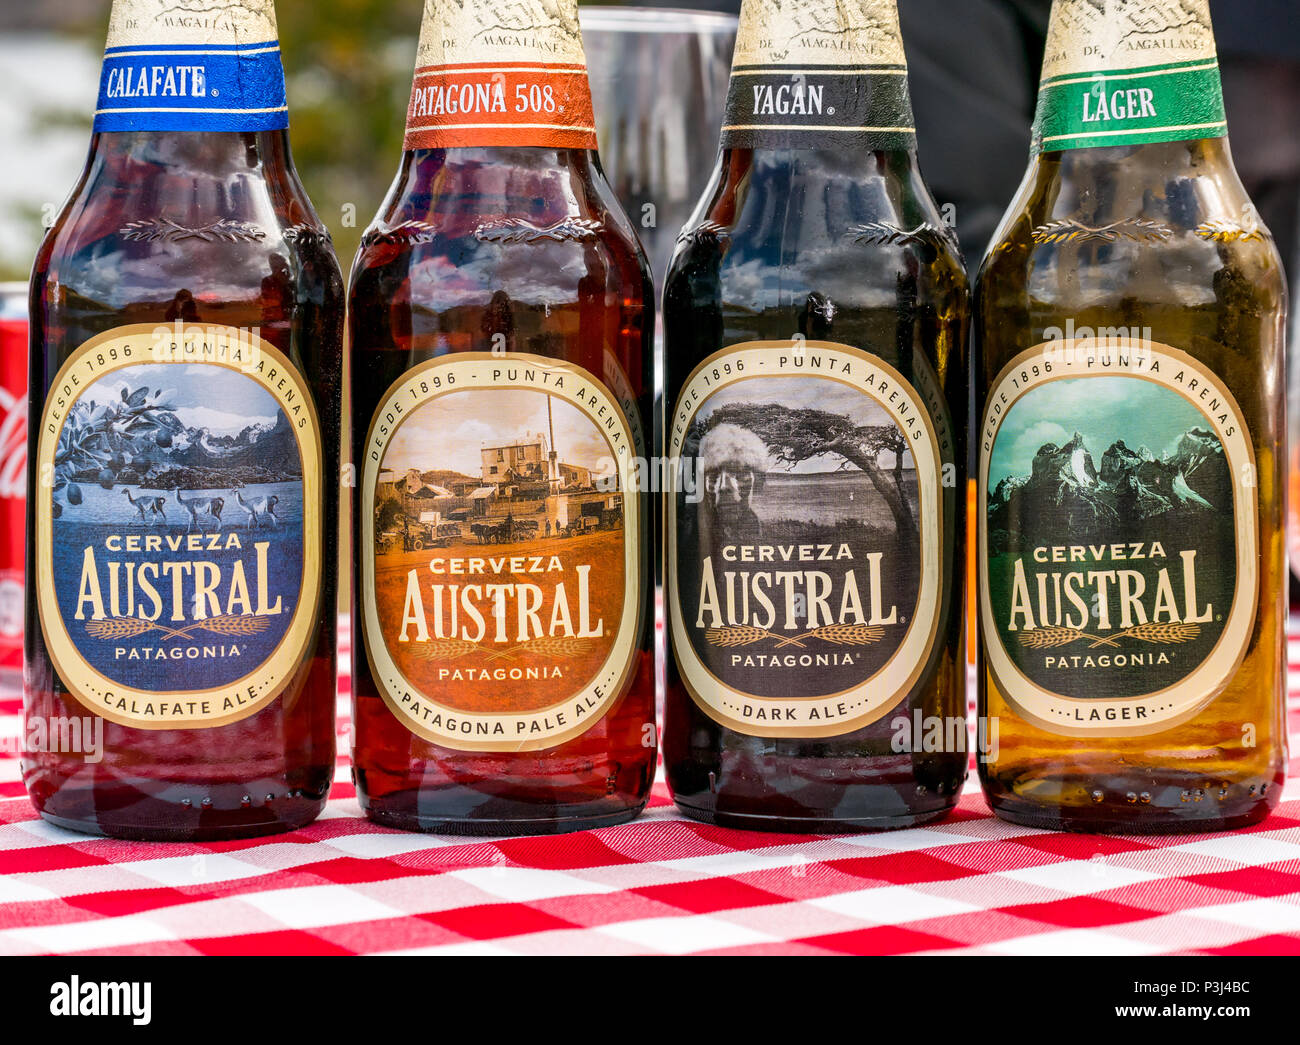 Nahaufnahme der Sorten von Austral Patagonien Bierflaschen, Calafate Ale, Pale Ale, Ale und Lager, Patagonien, Chile Stockfoto